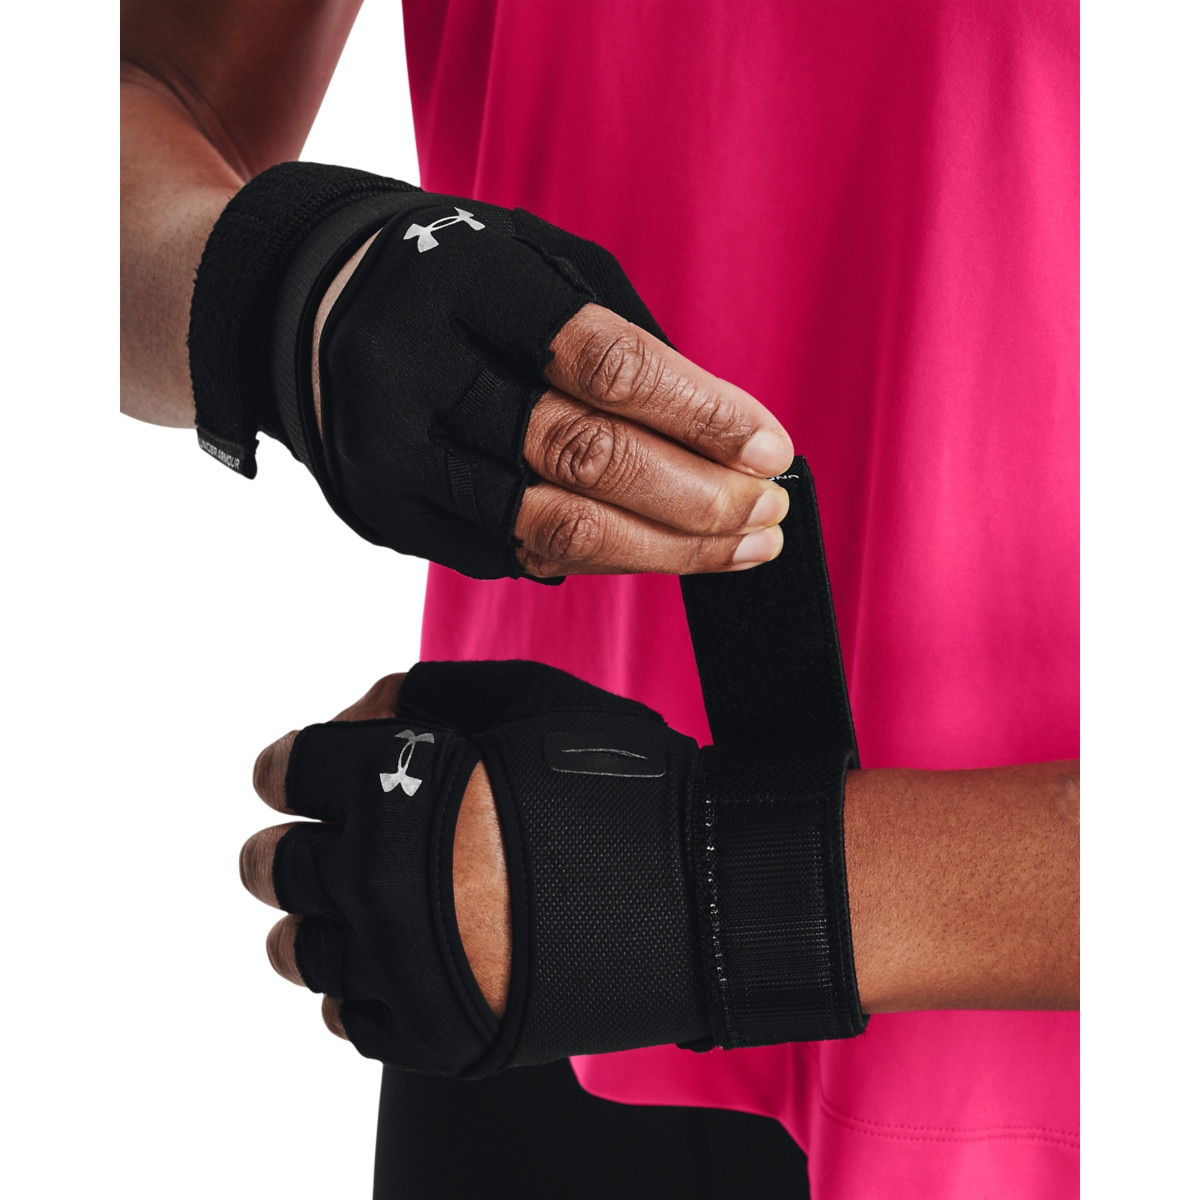 Damskie rękawiczki treningowe Under Armour W's Weightlifting Gloves - czarne - UNDER ARMOUR